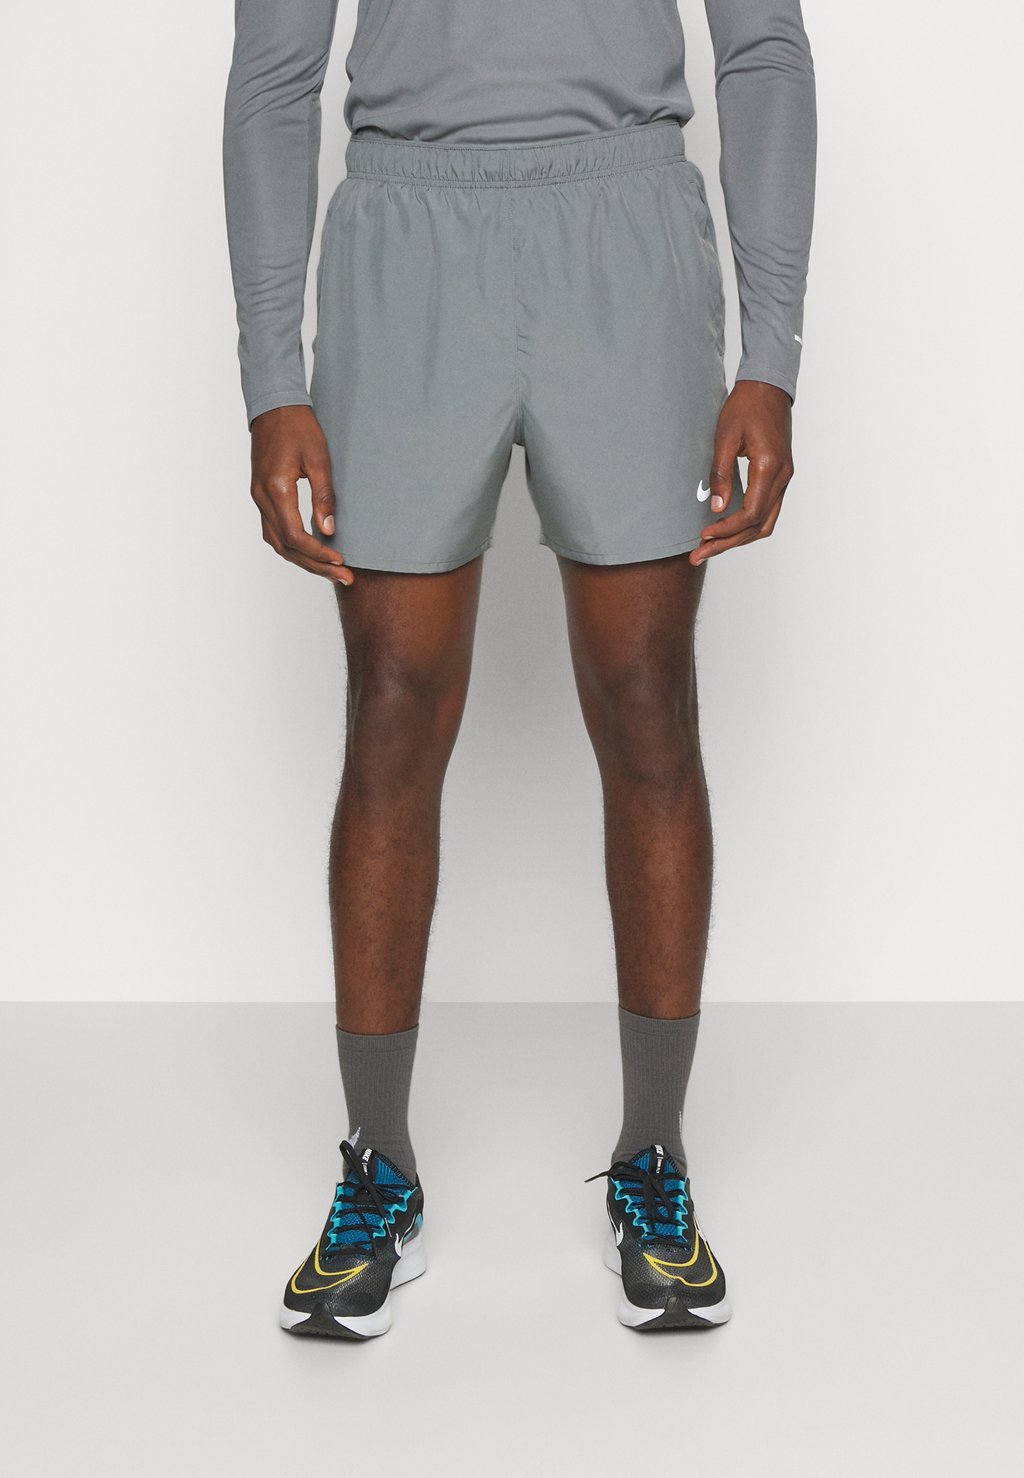 Спортивные шорты CHALLENGER SHORT Nike, дымчато-серый/черный